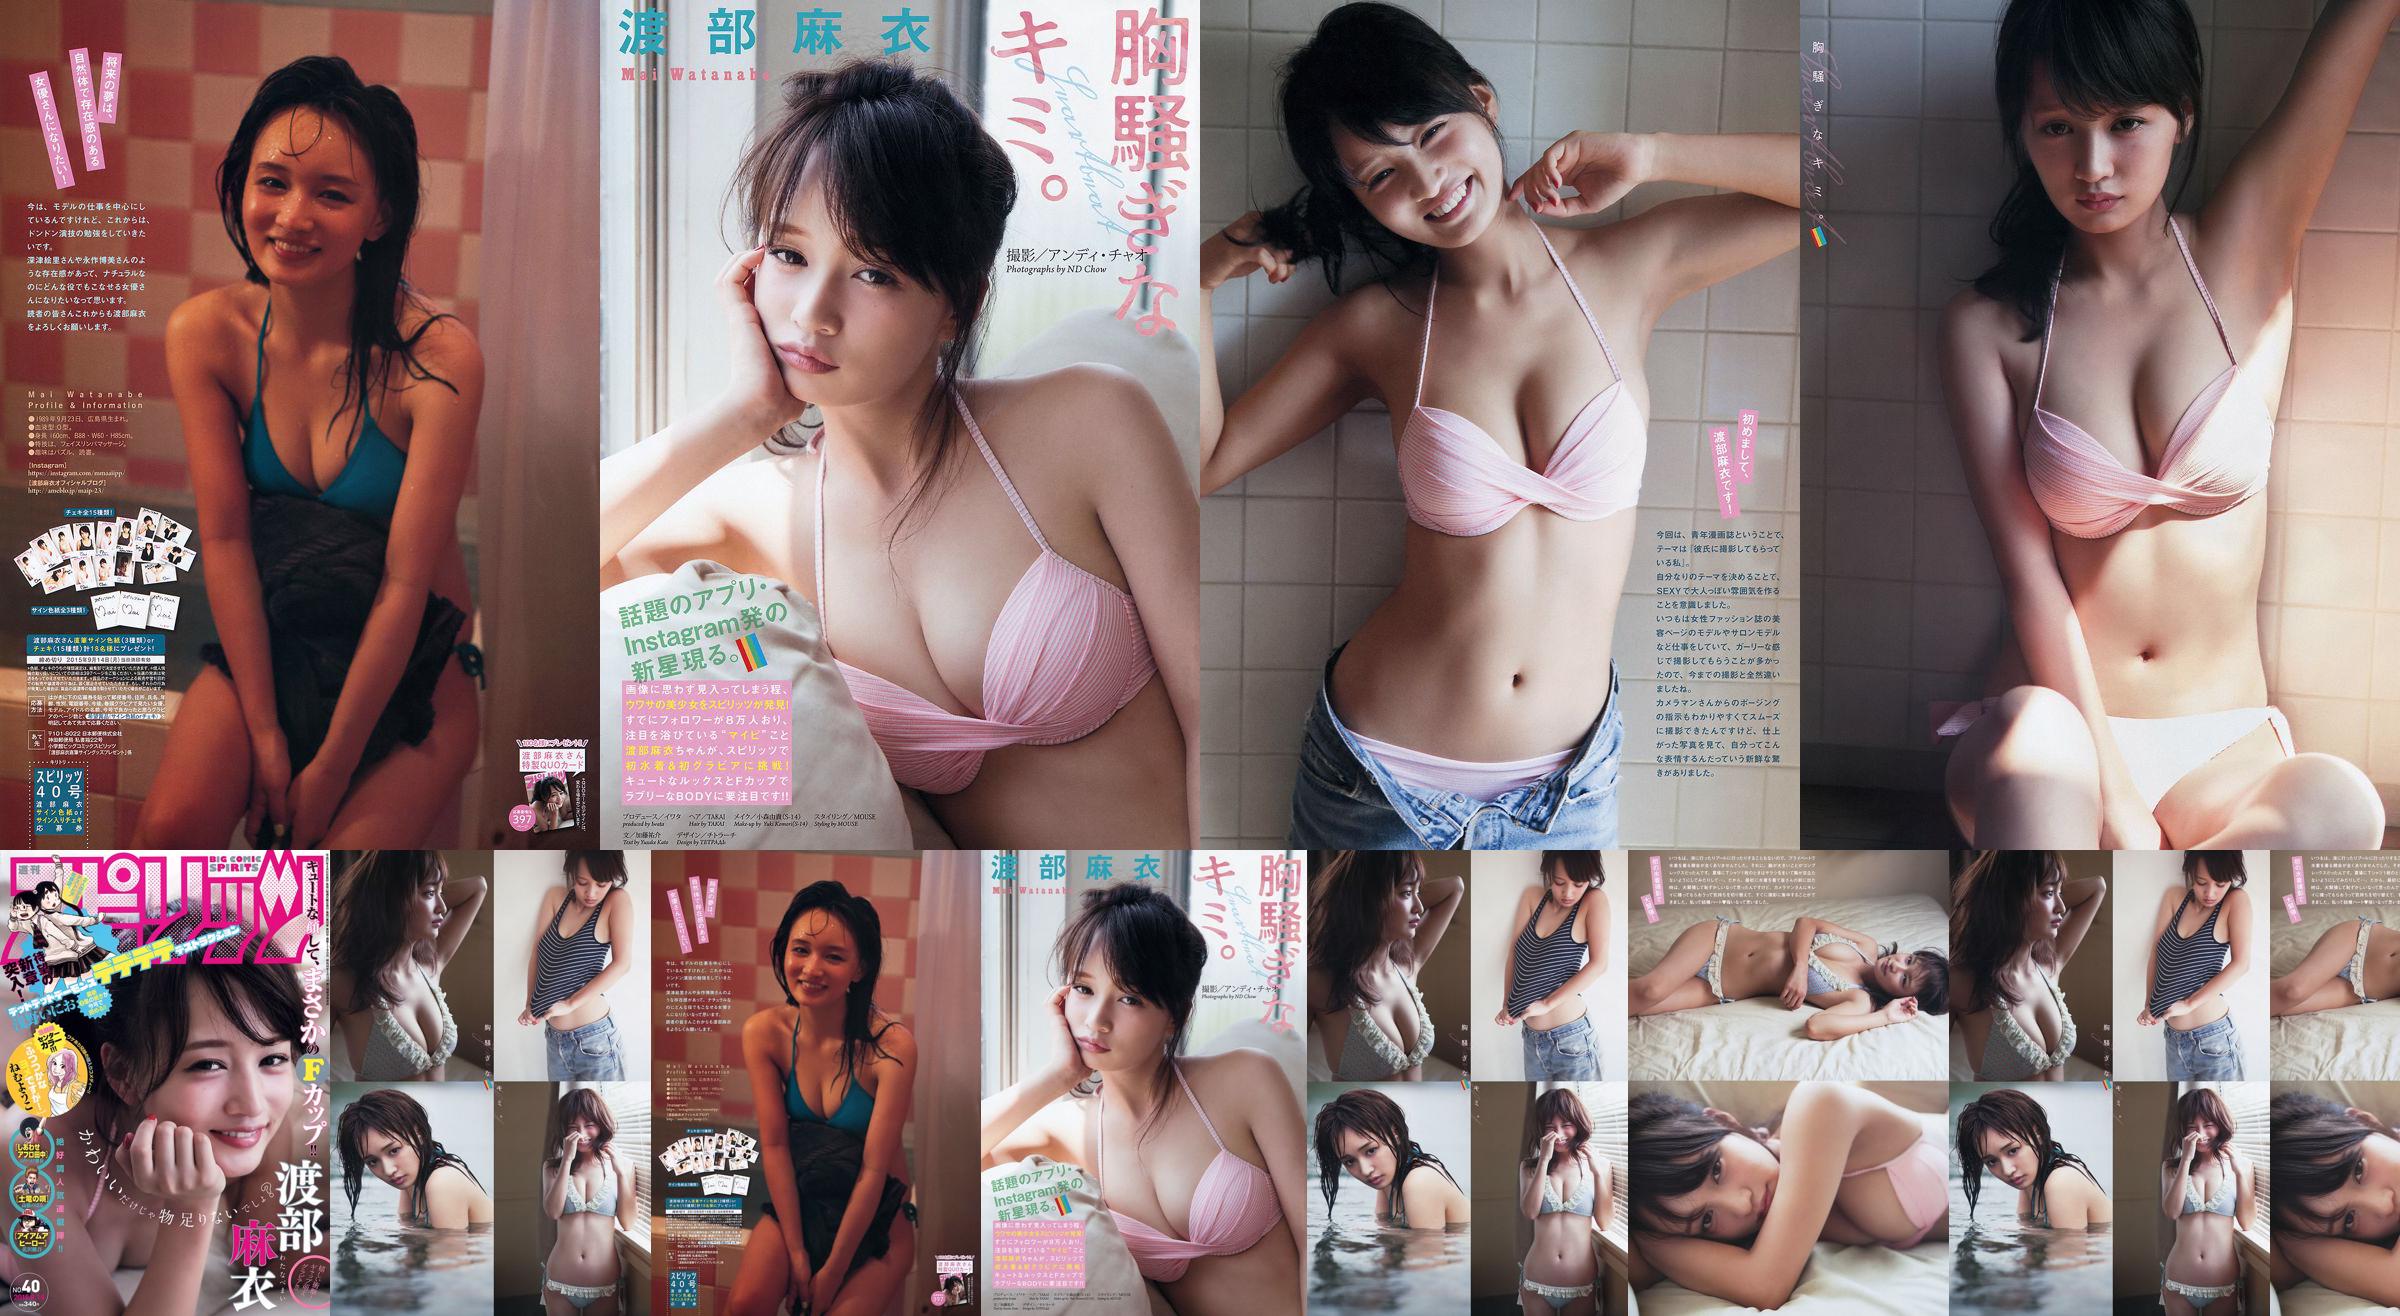 [Wekelijkse Big Comic Spirits] Watanabe Mai 2015 No.40 Photo Magazine No.ba05df Pagina 2